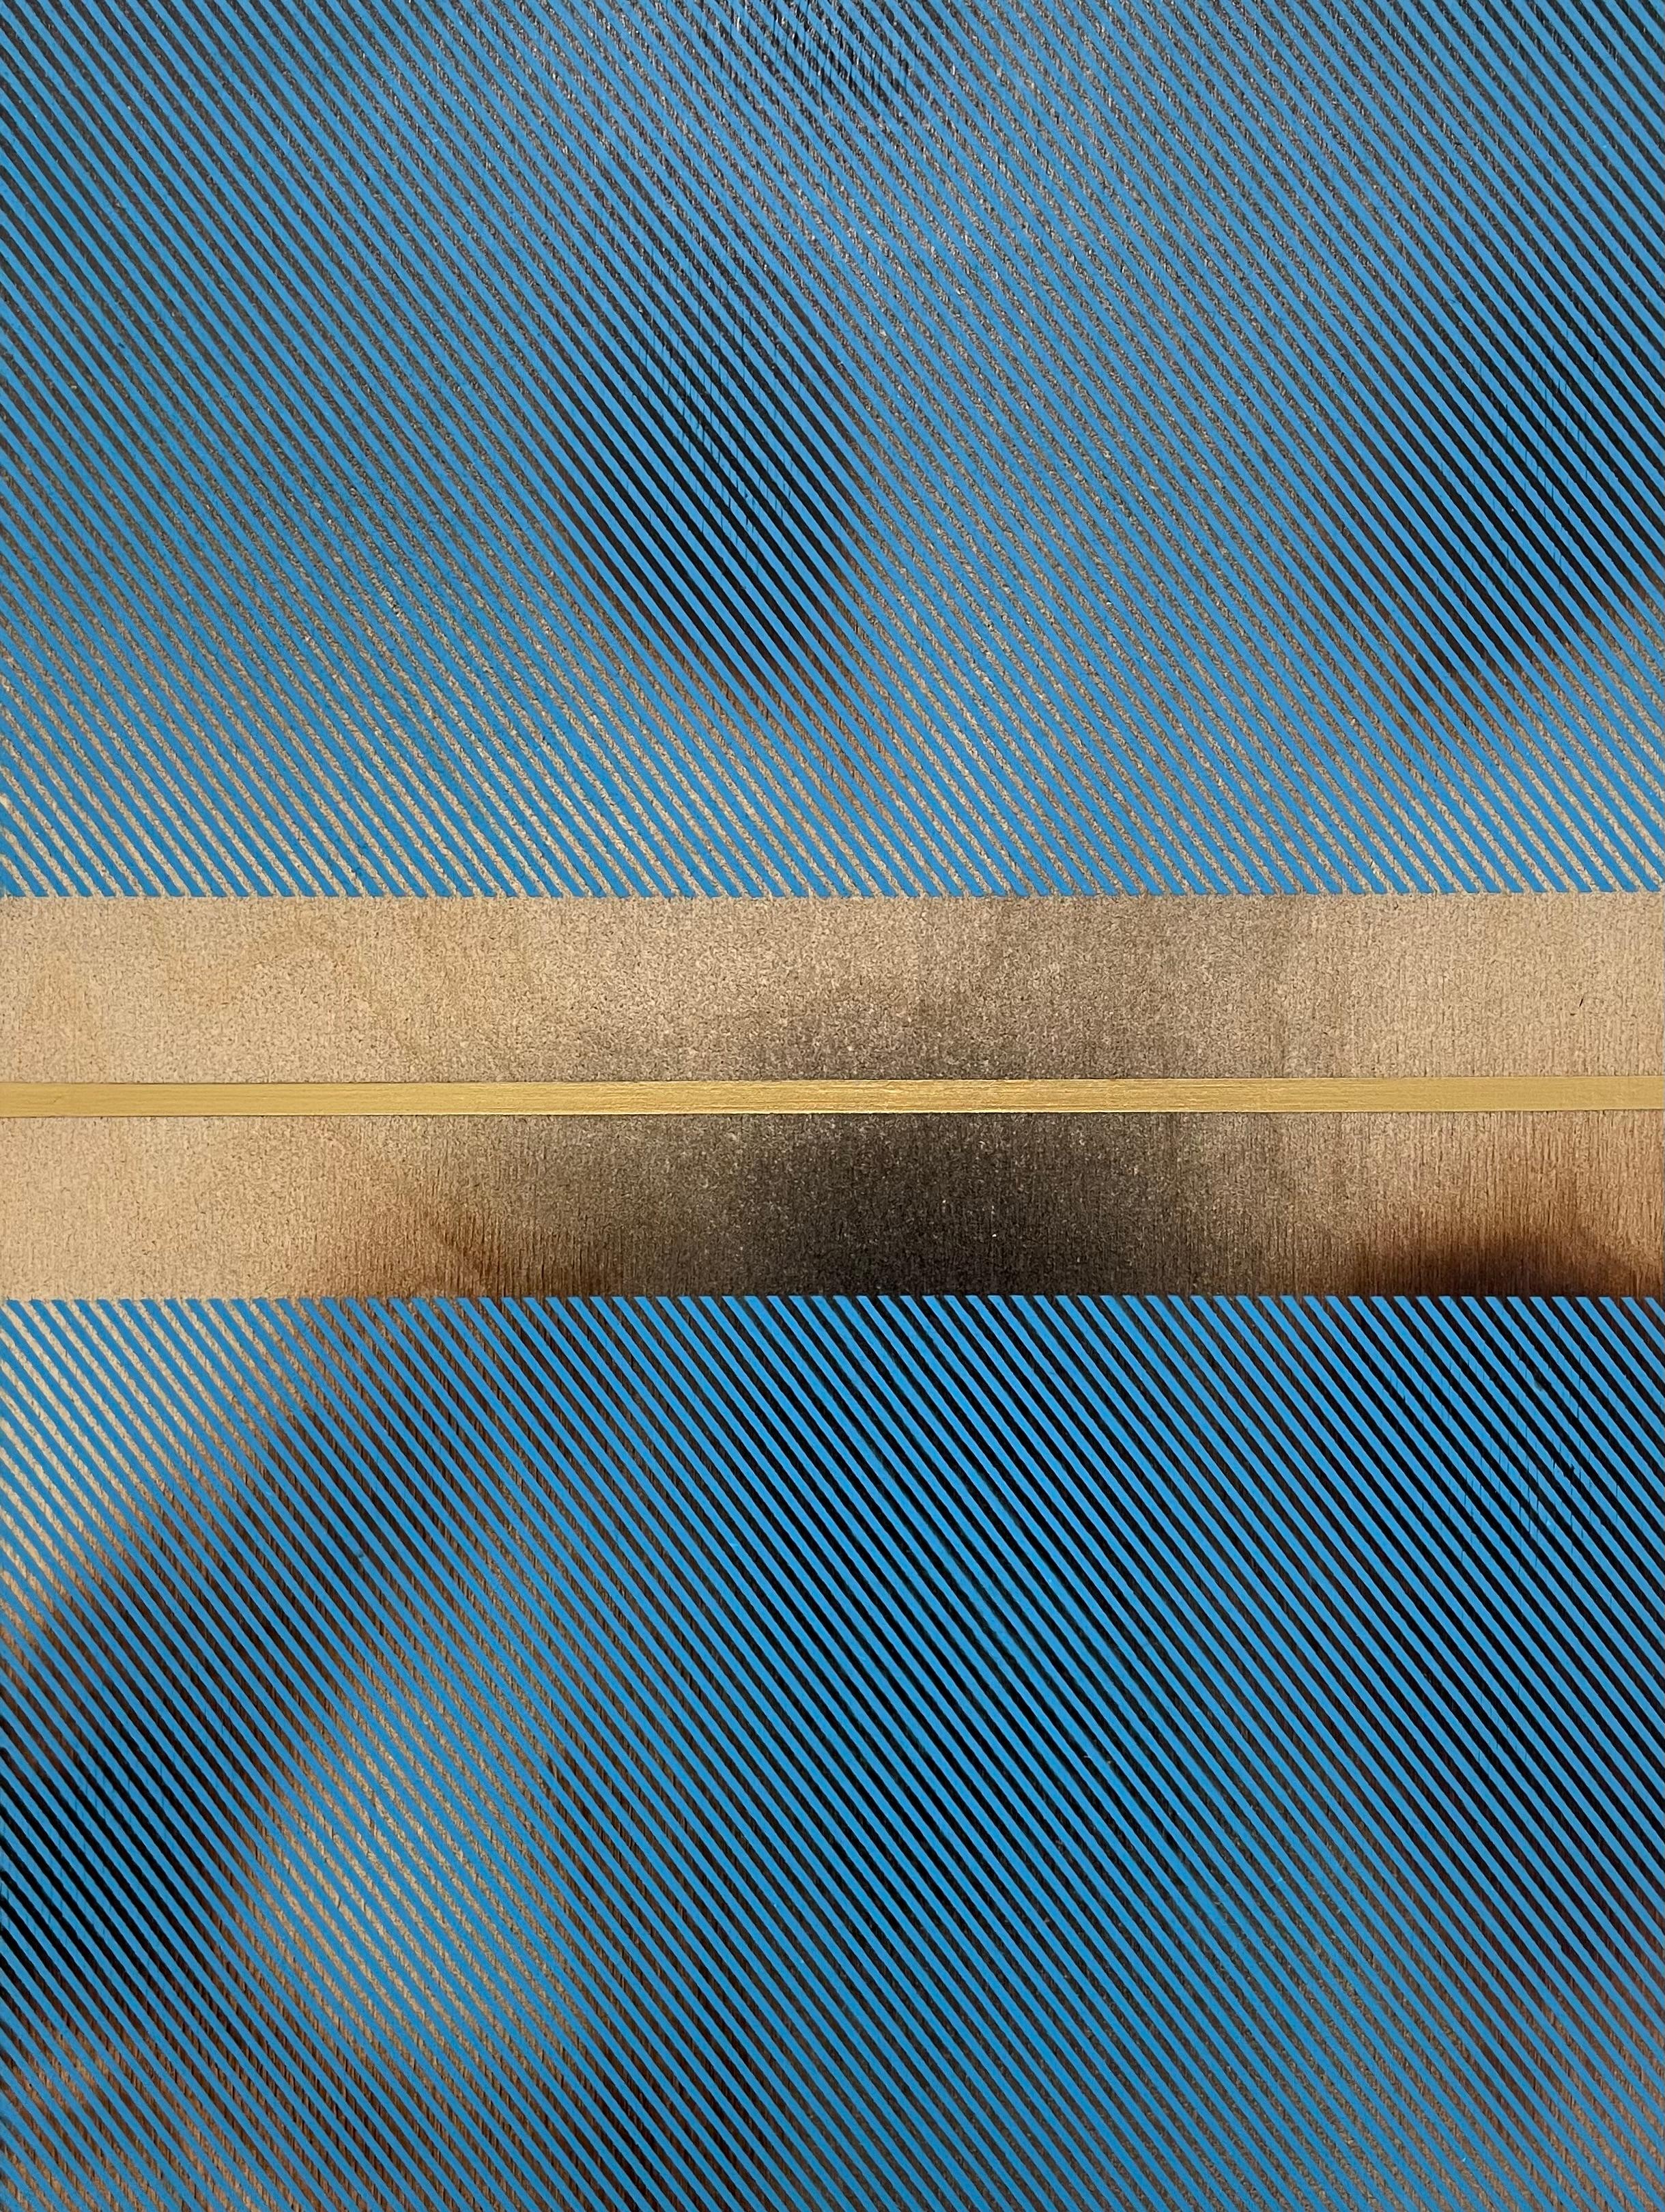 Sky Blue Mangata (grid painting minimal wood hard-edge dopamine color vibrant)